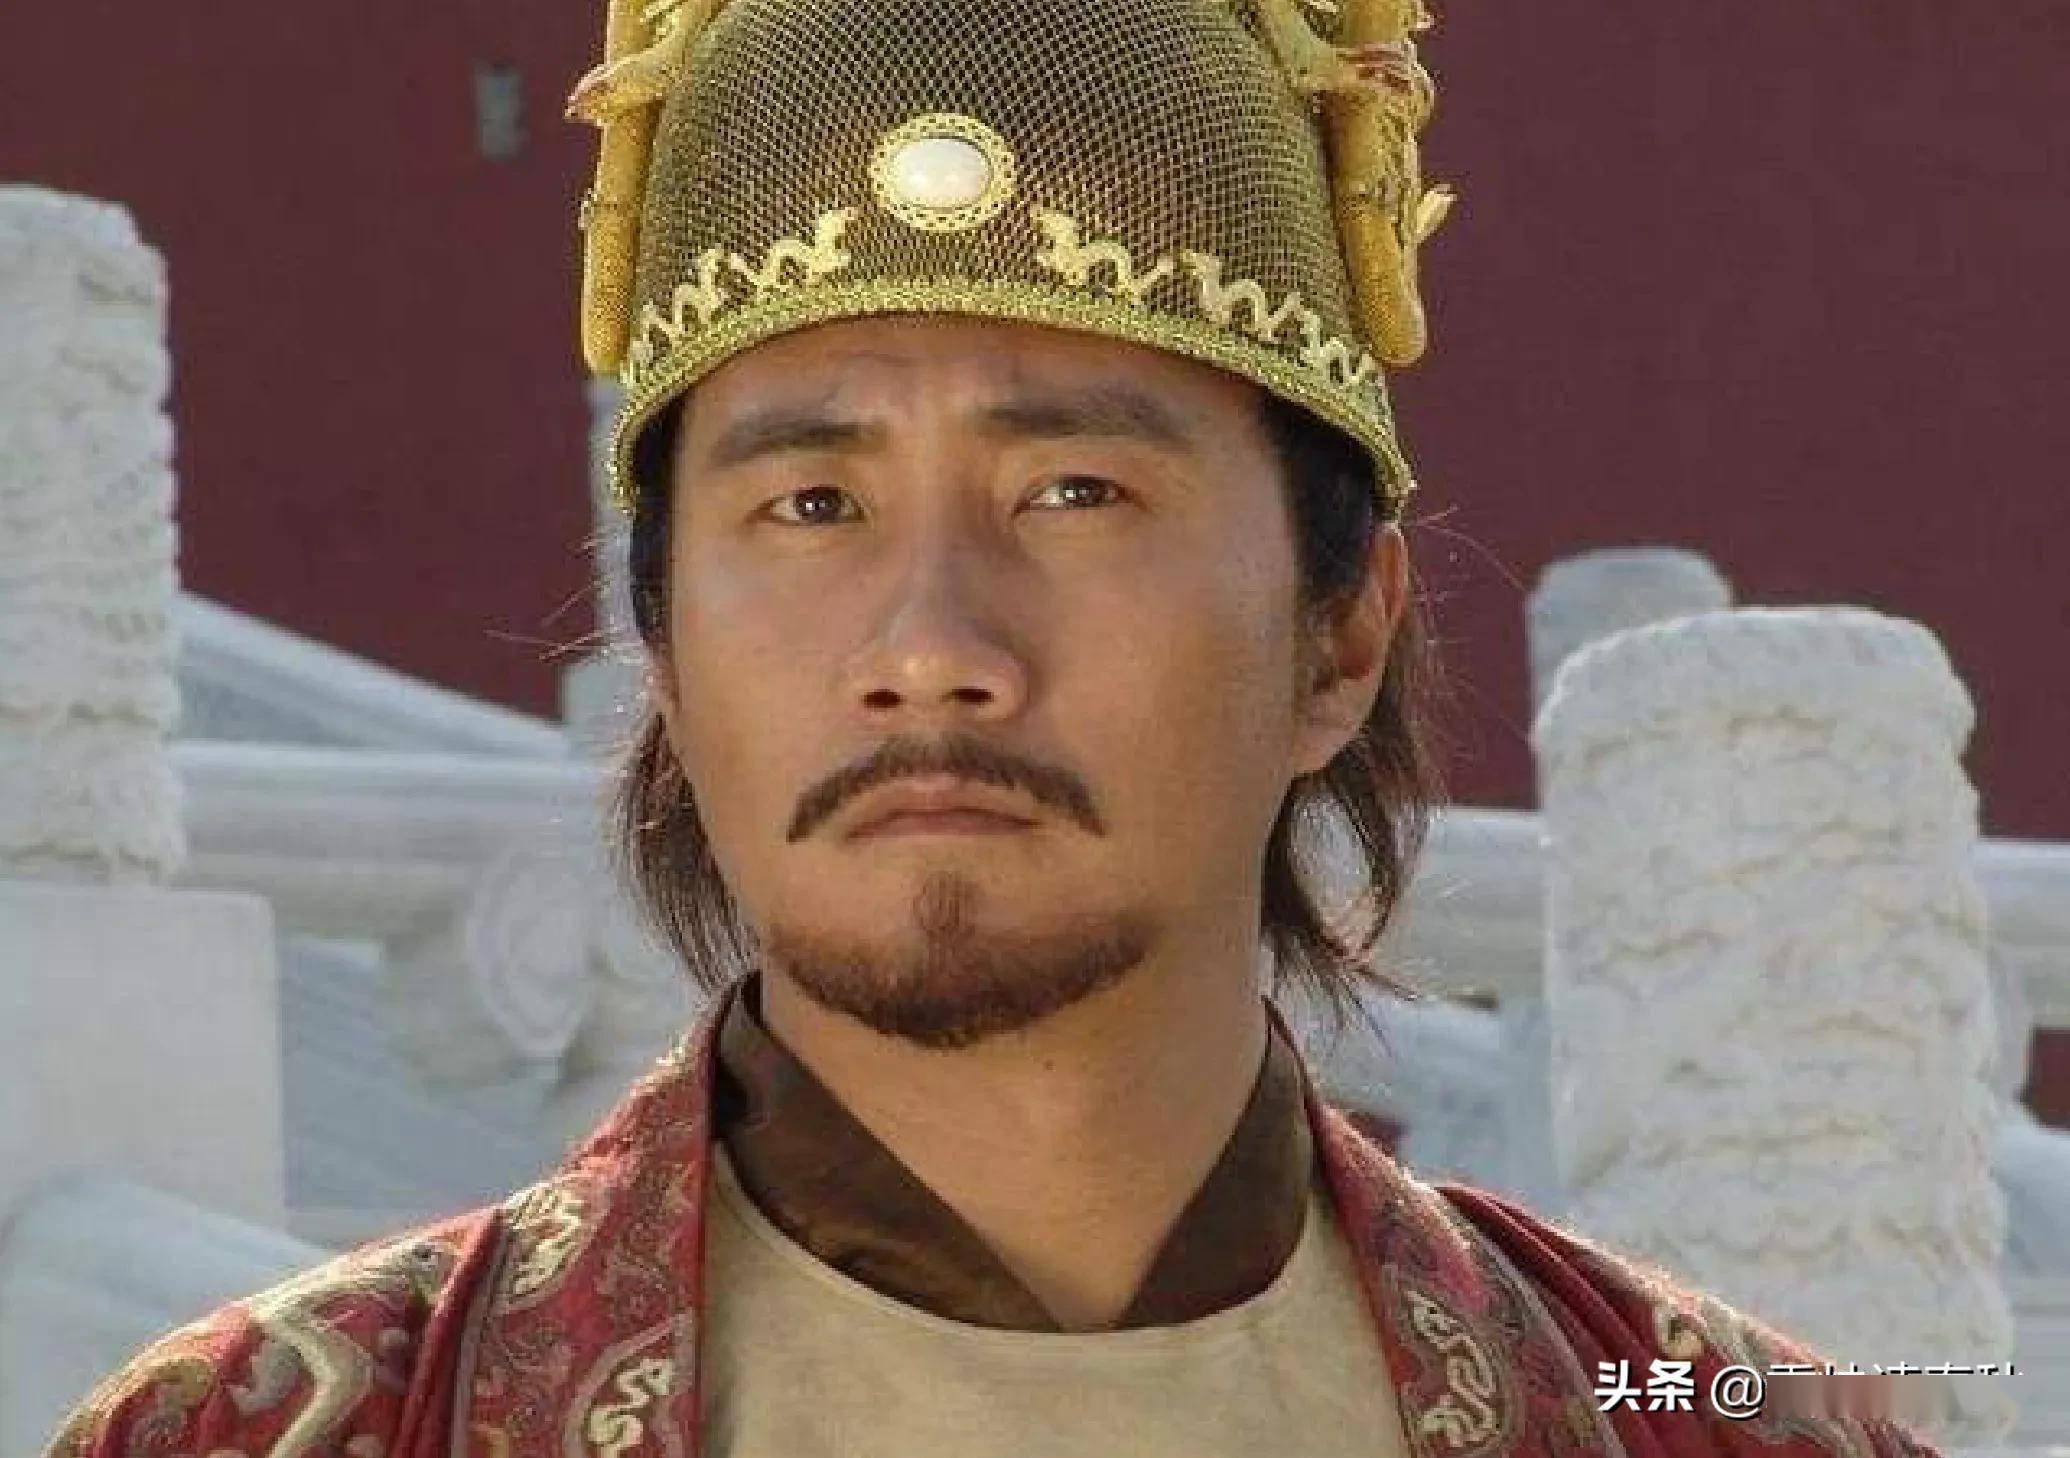 朱元璋出身贫寒从没上过学当皇帝后他如何批改奏折